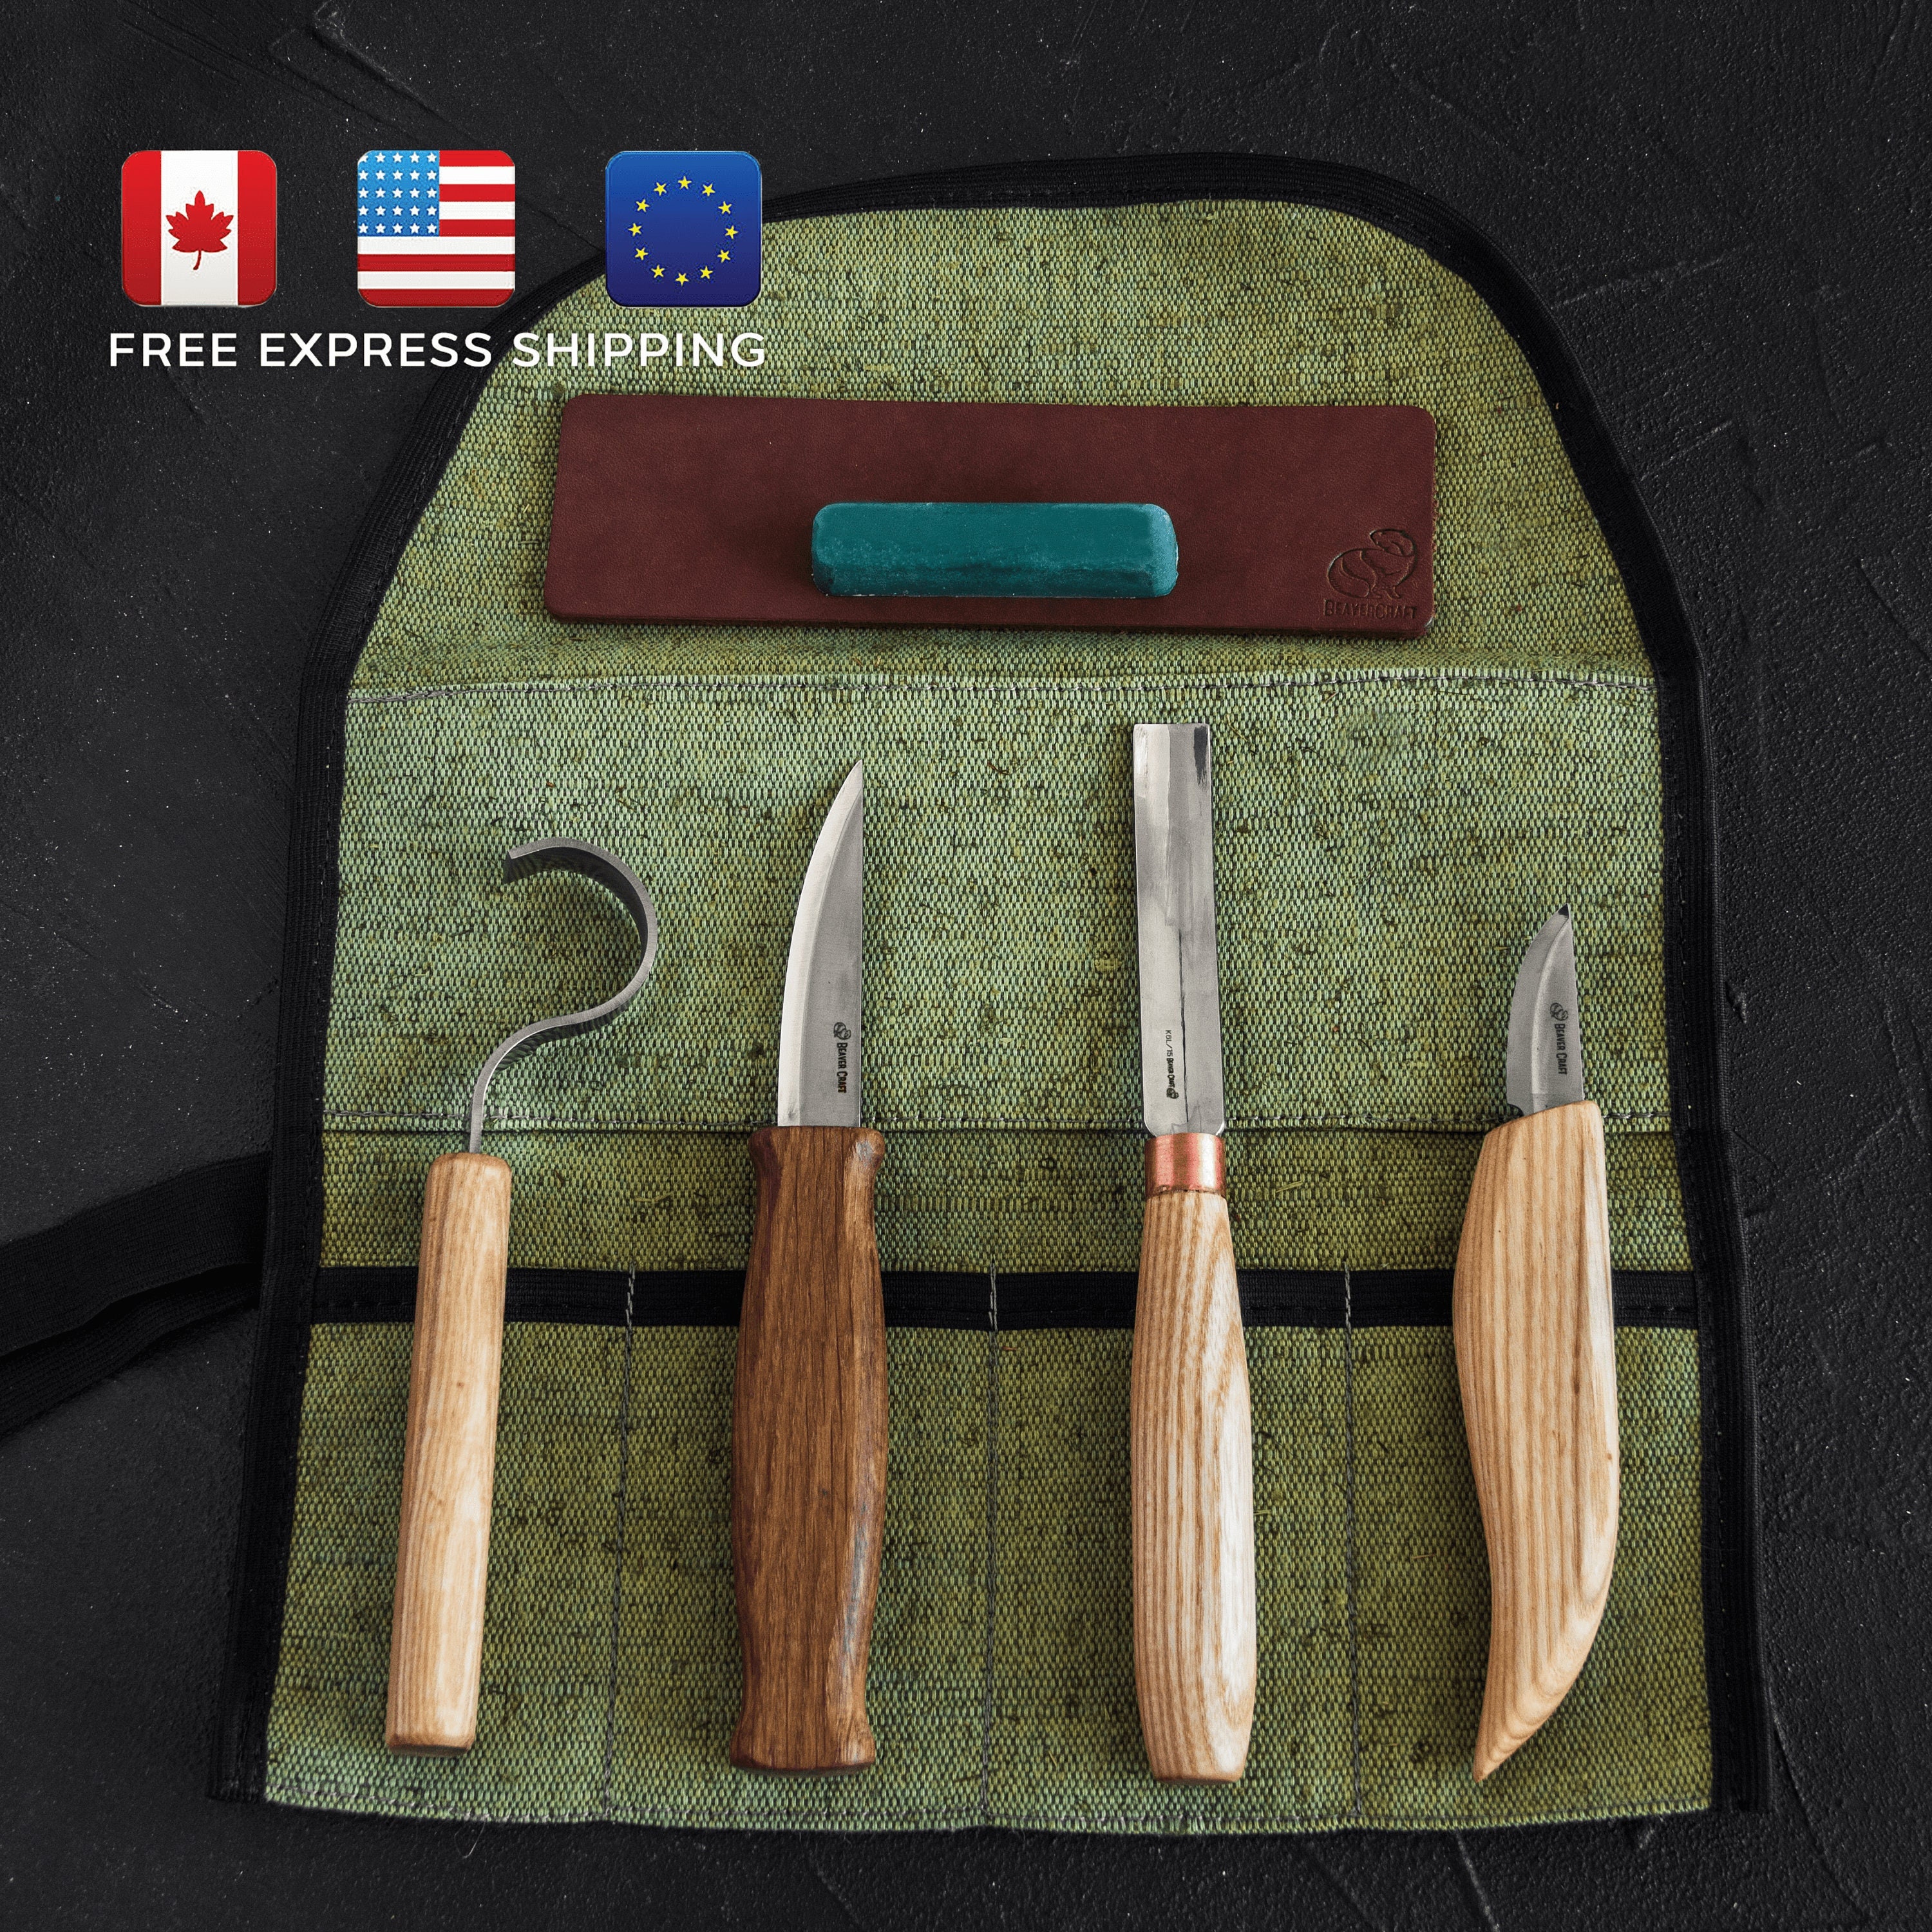 Craft Tool Kits, Heirloom-Quality Tools